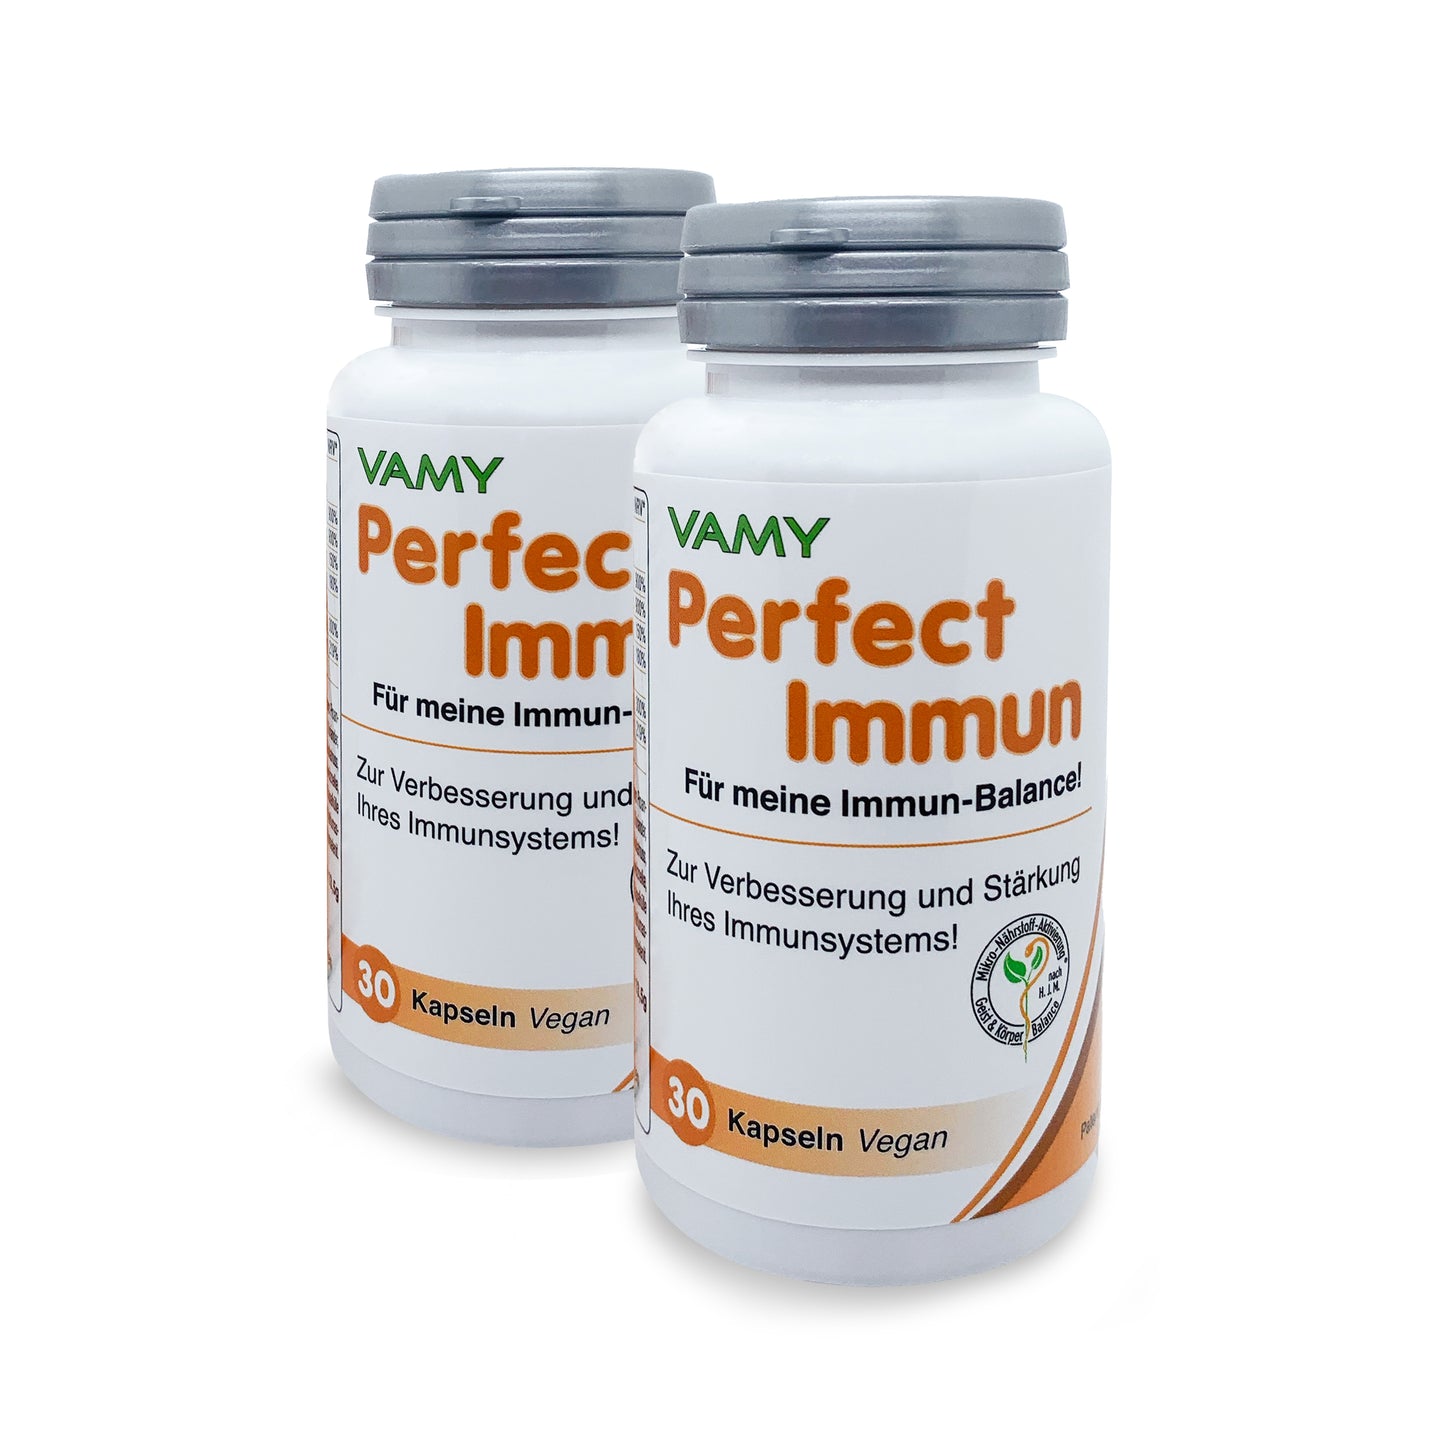 VAMY Perfect Immun